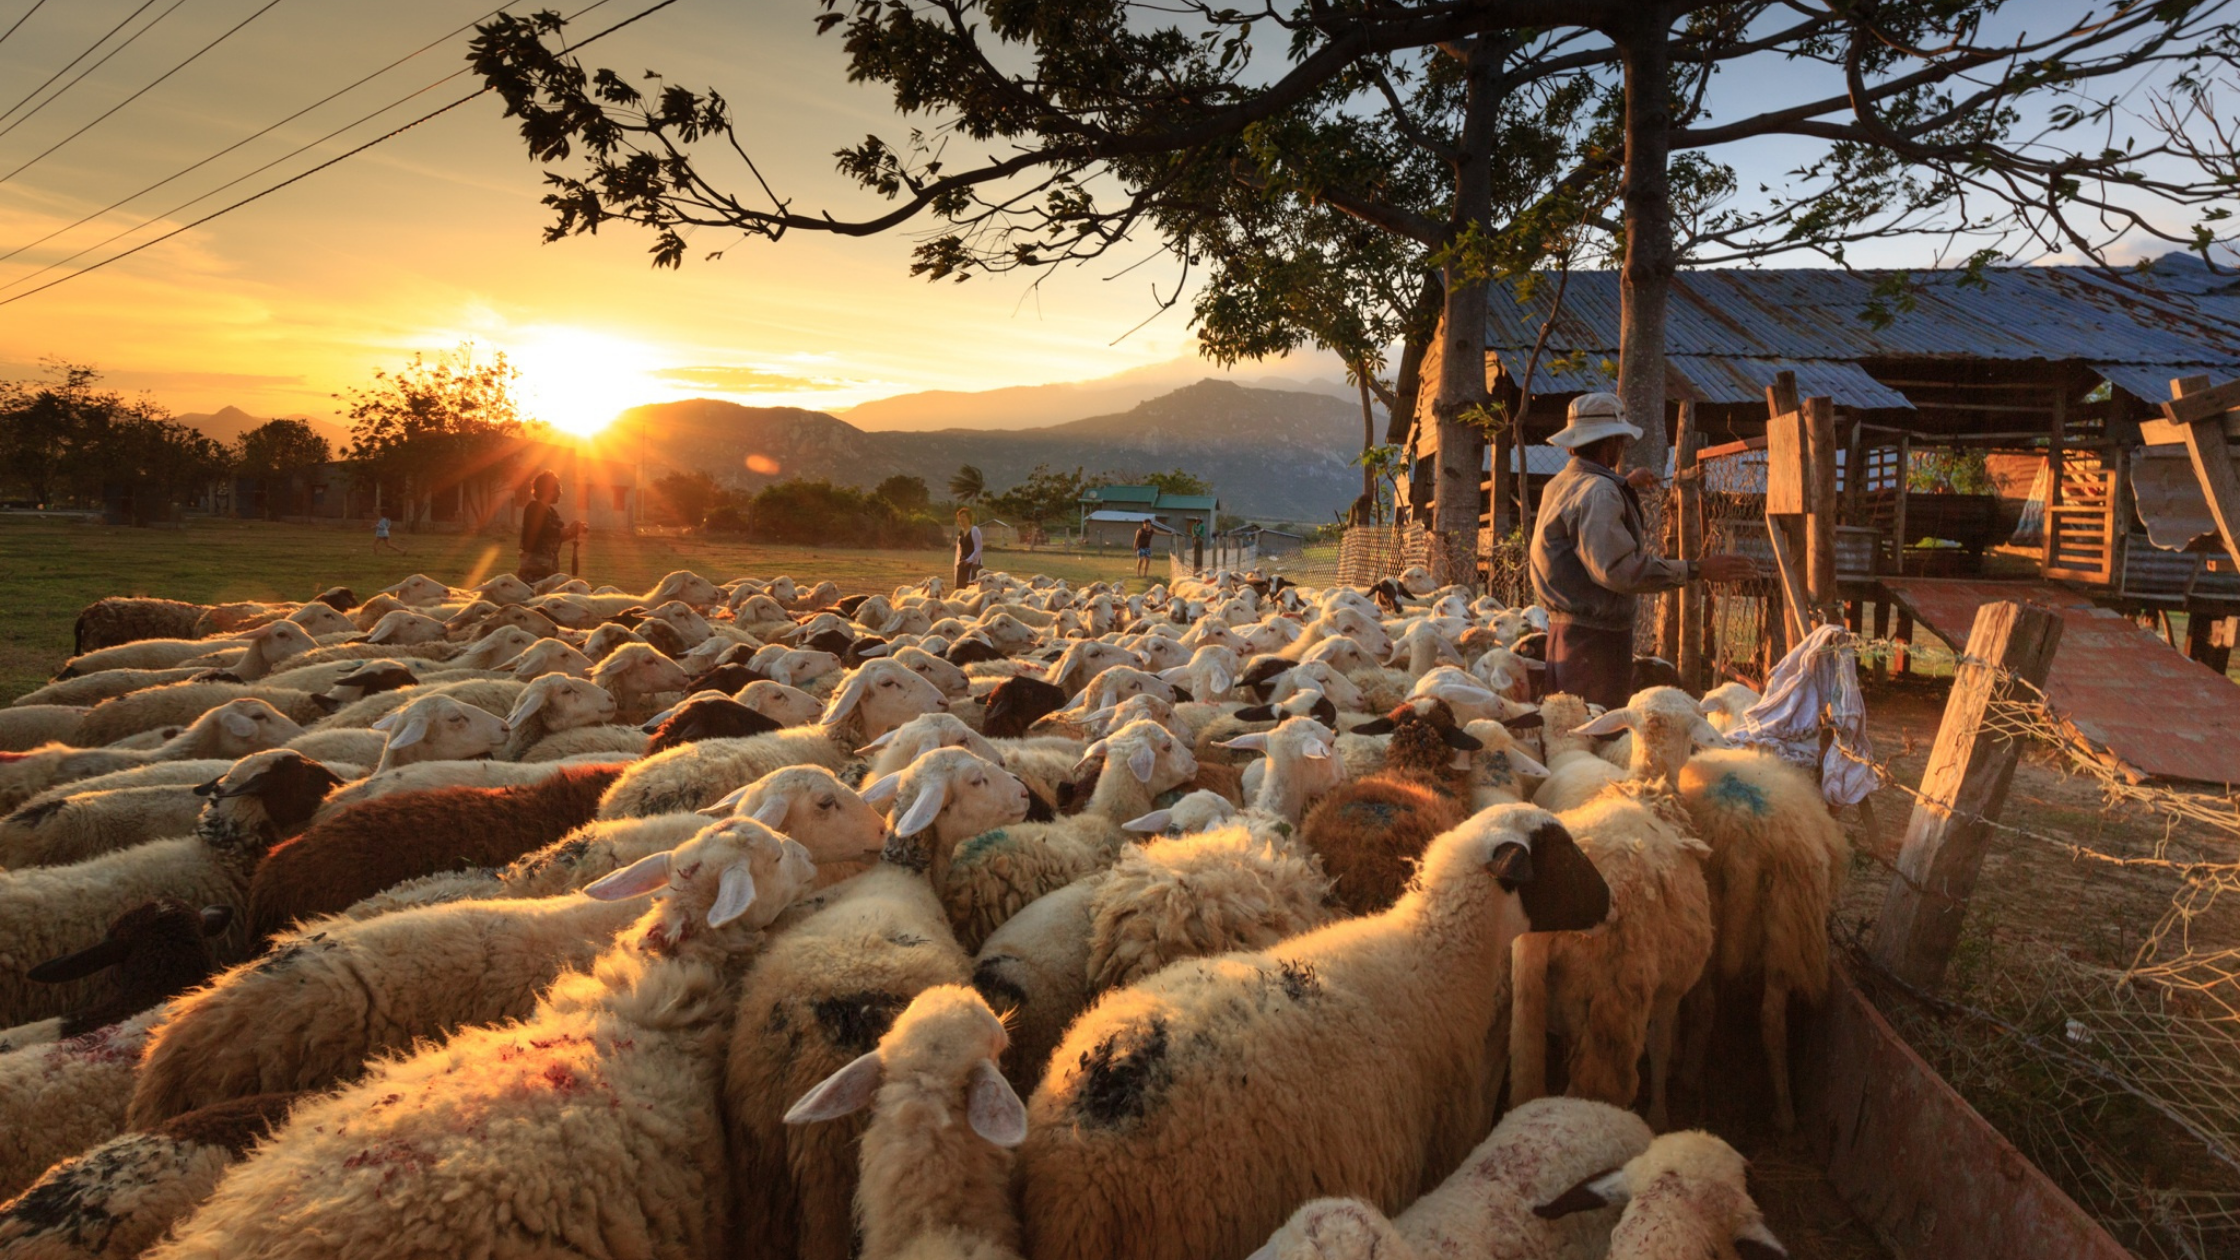 Sheep following shepherd